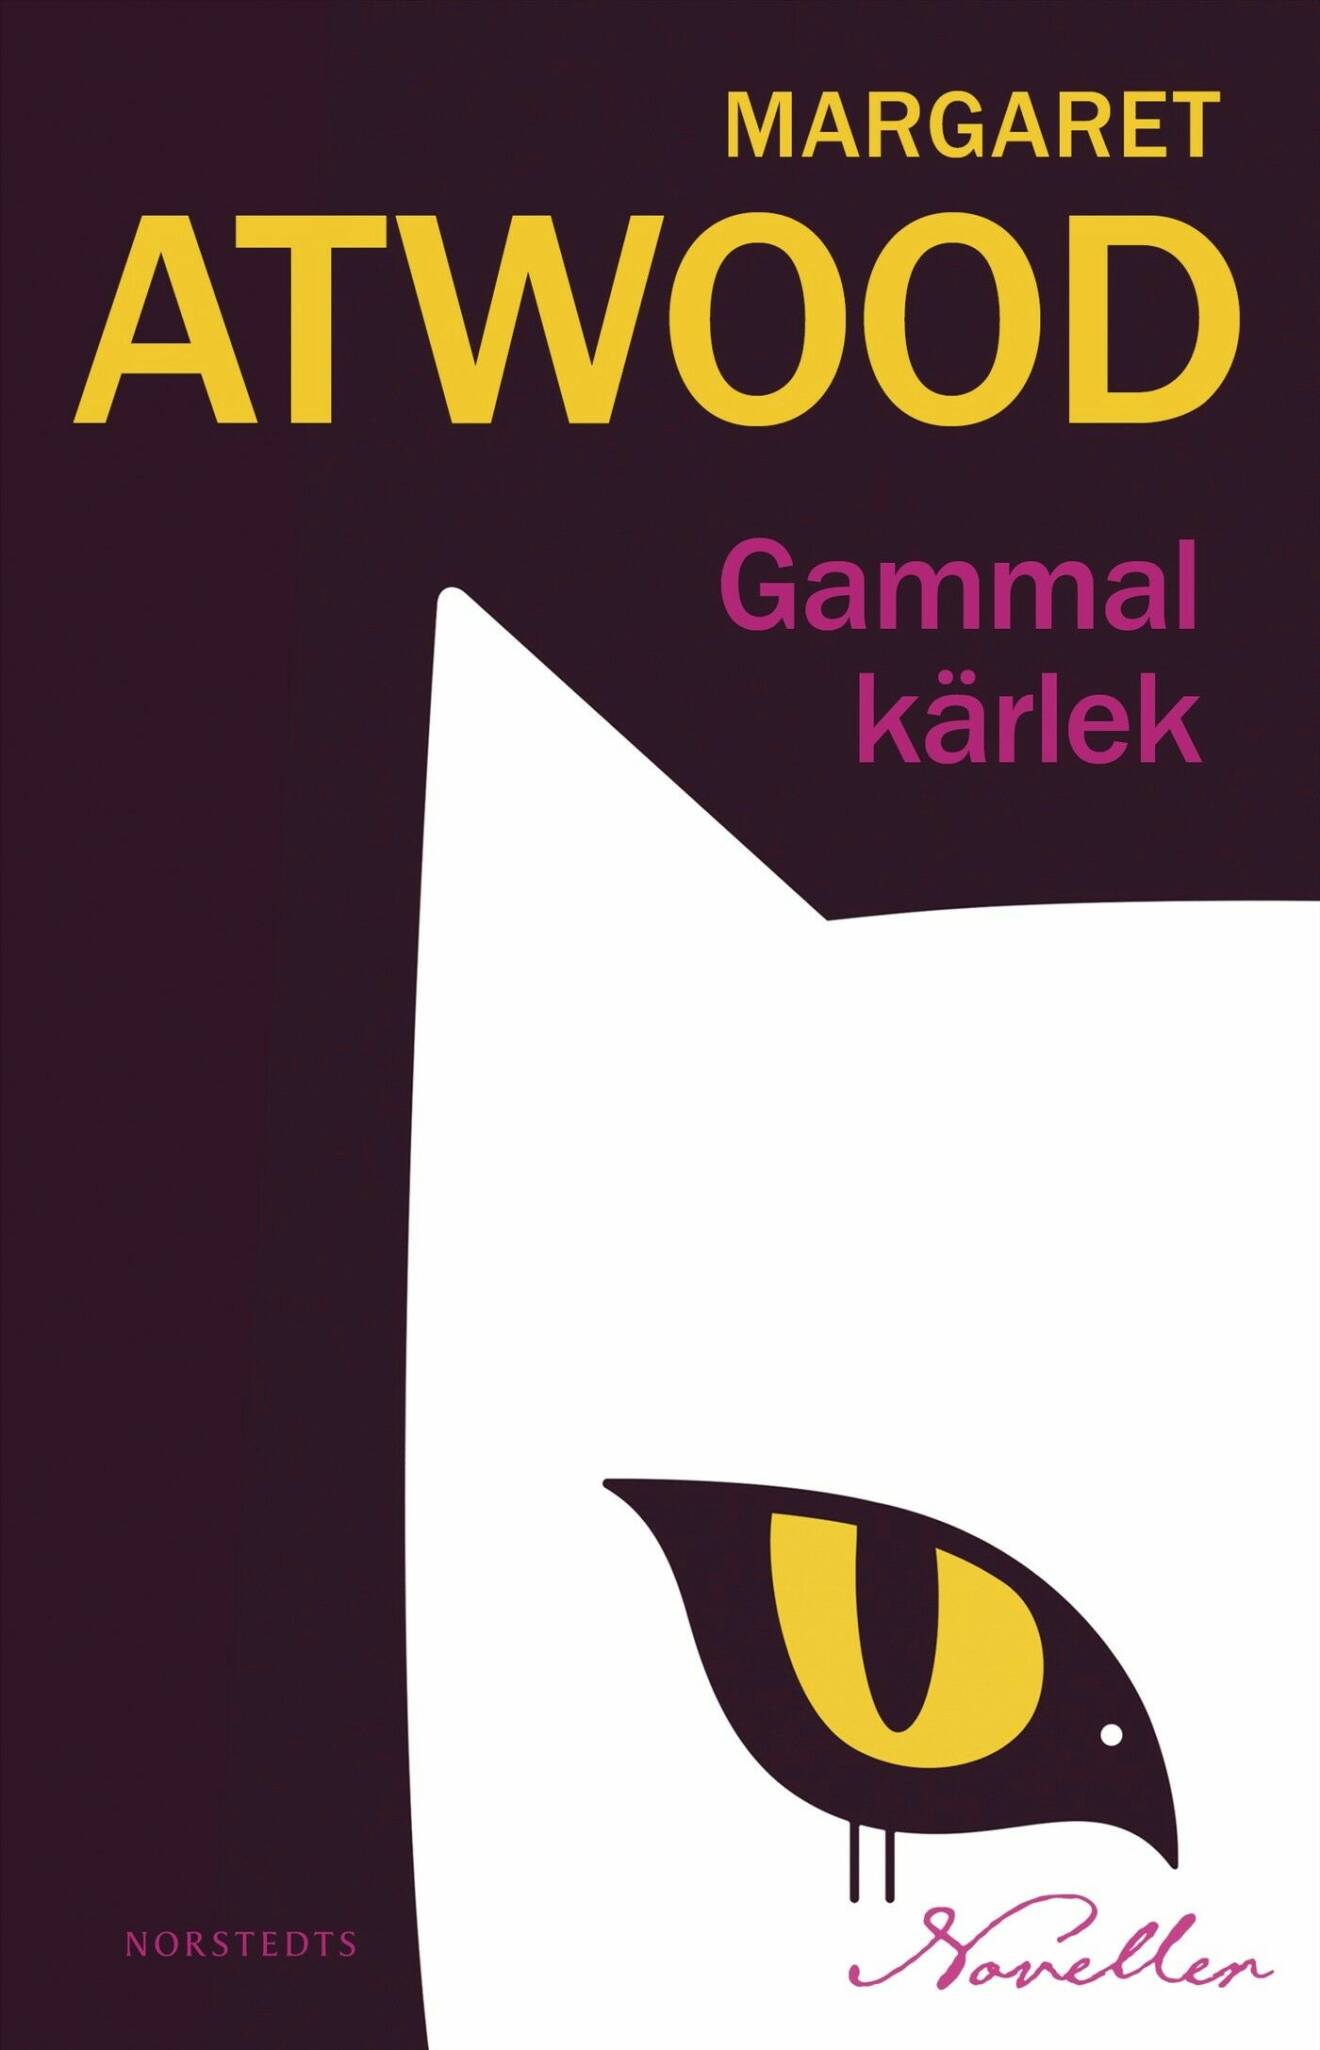 Gammal kärlek av Margaret Atwood (Norstedts).